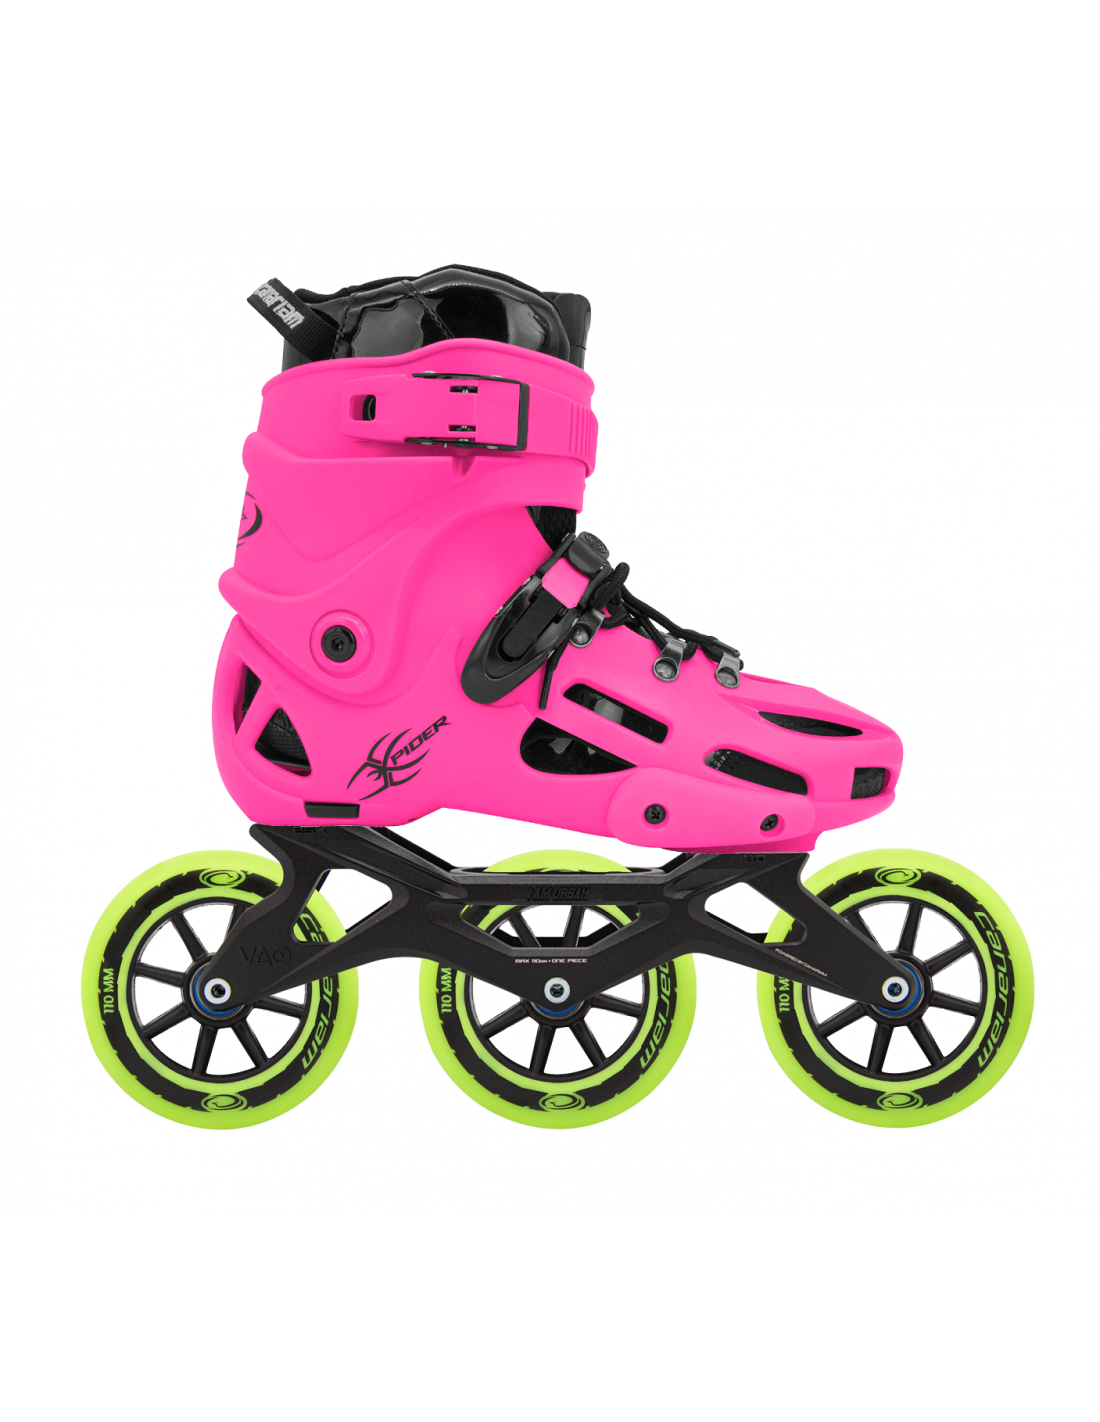 Micro Skate Shock - Protecciones para patines- Rodilleras y Coderas para  Patinar